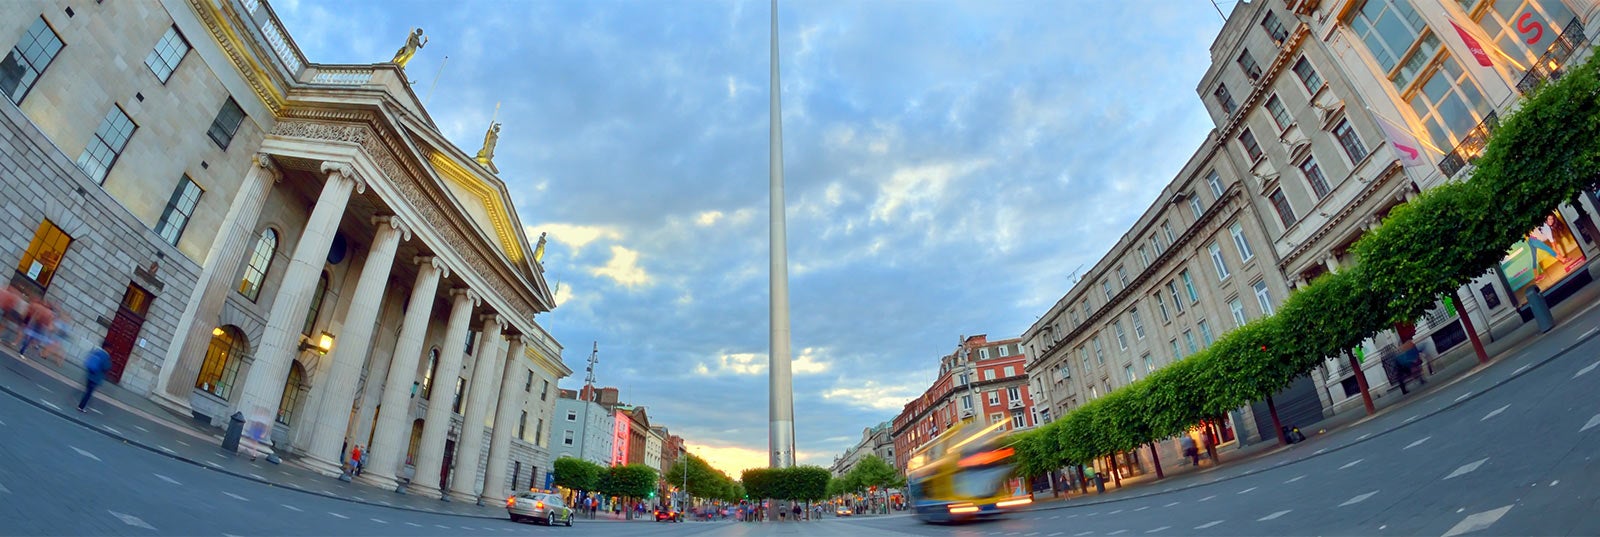 Guía turística de Dublino